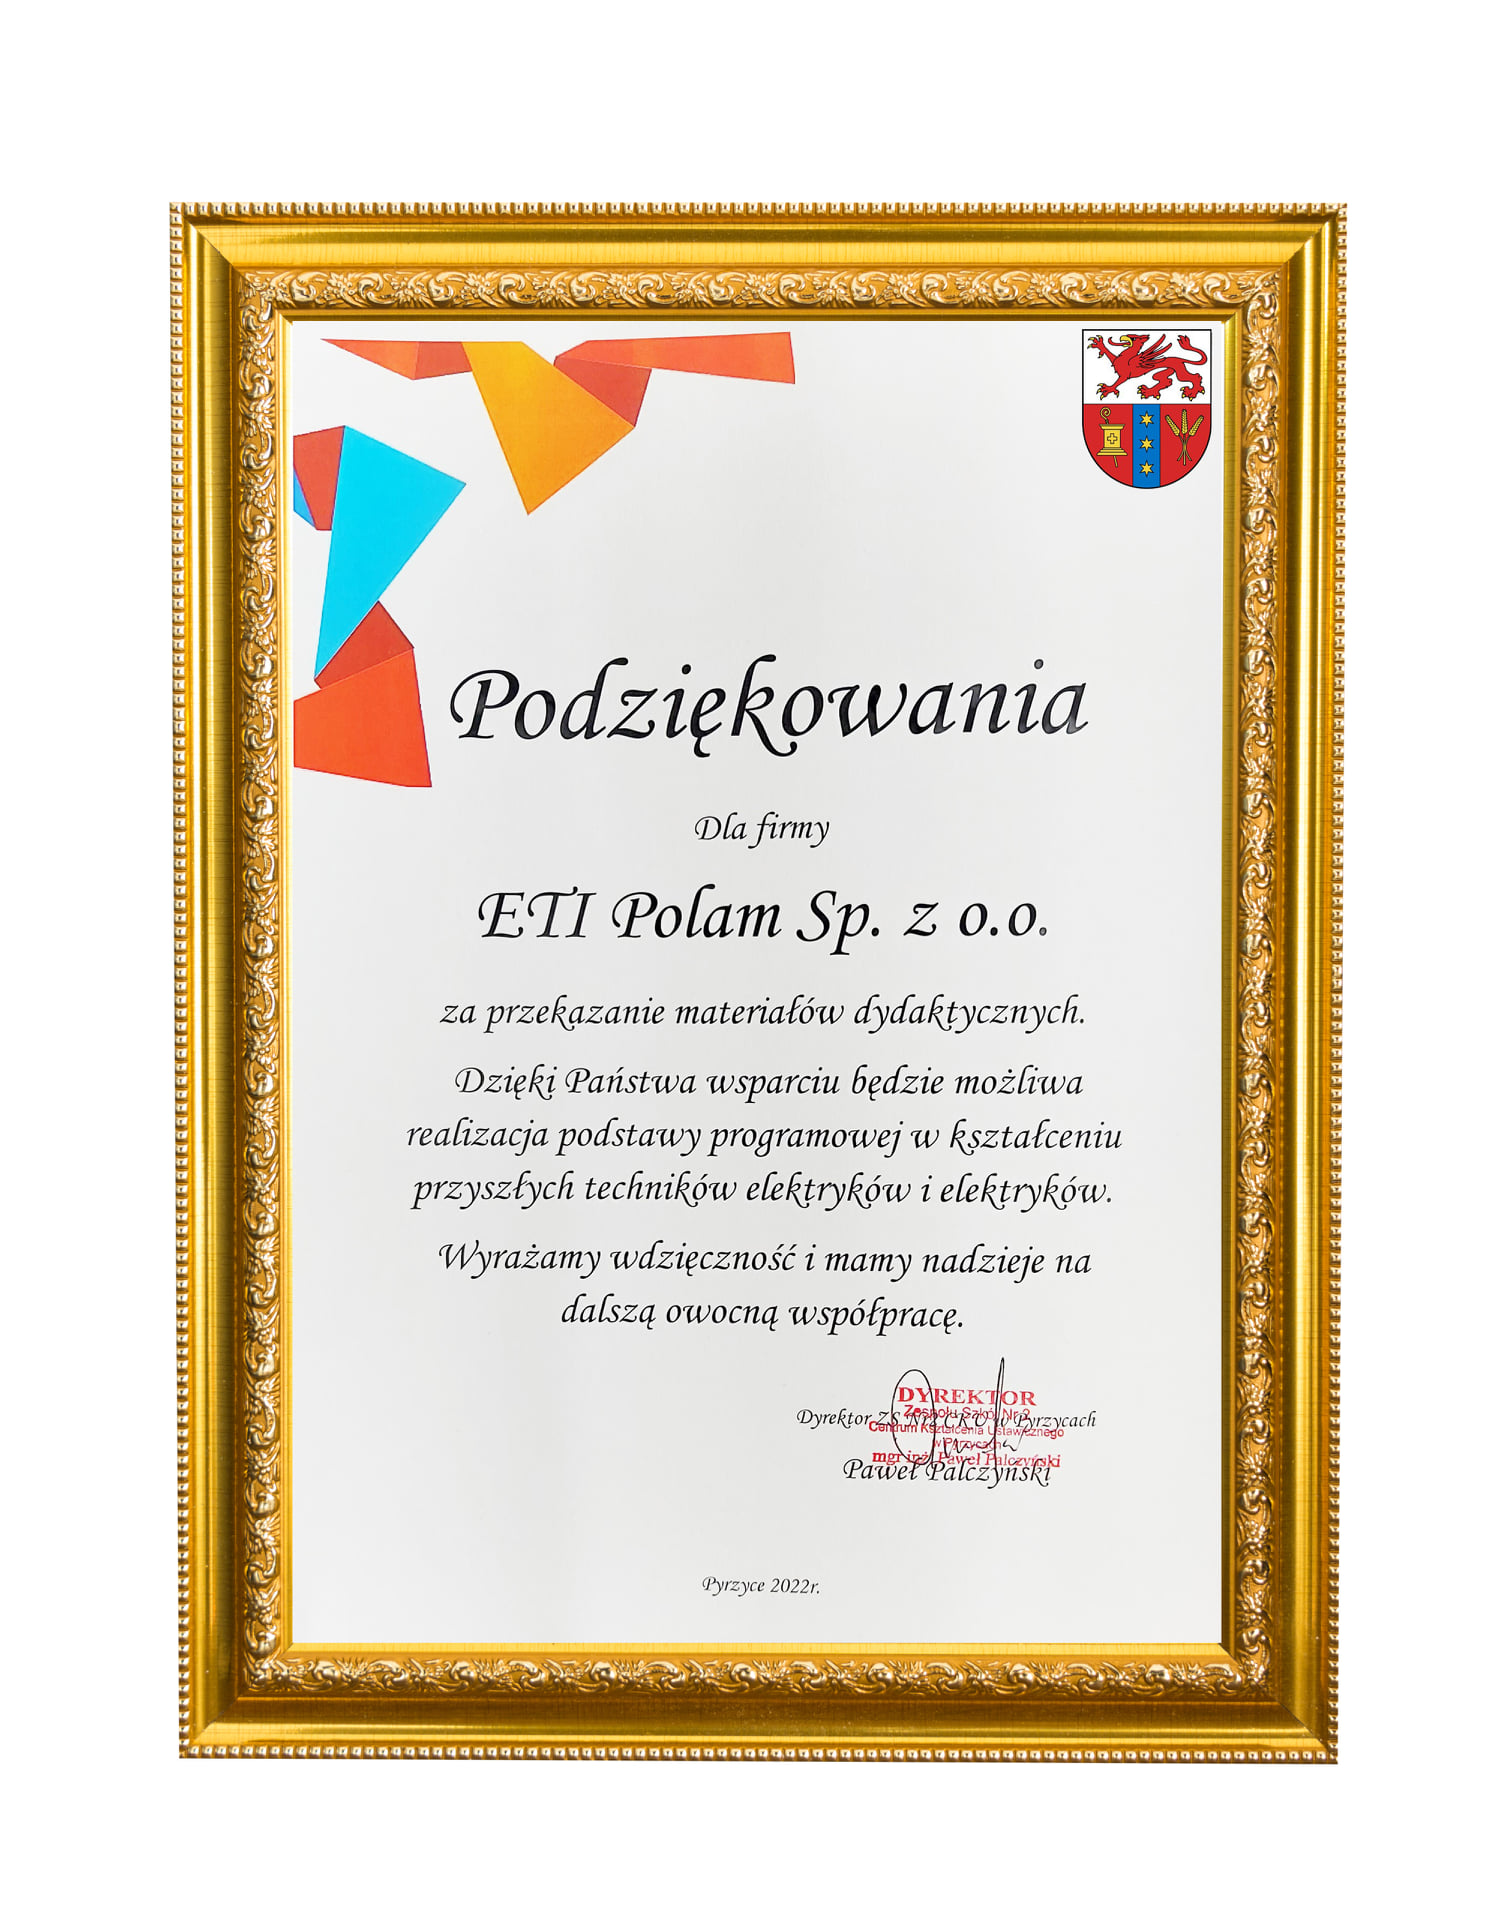 Nawiązanie współpracy z Firmą ETI Polam